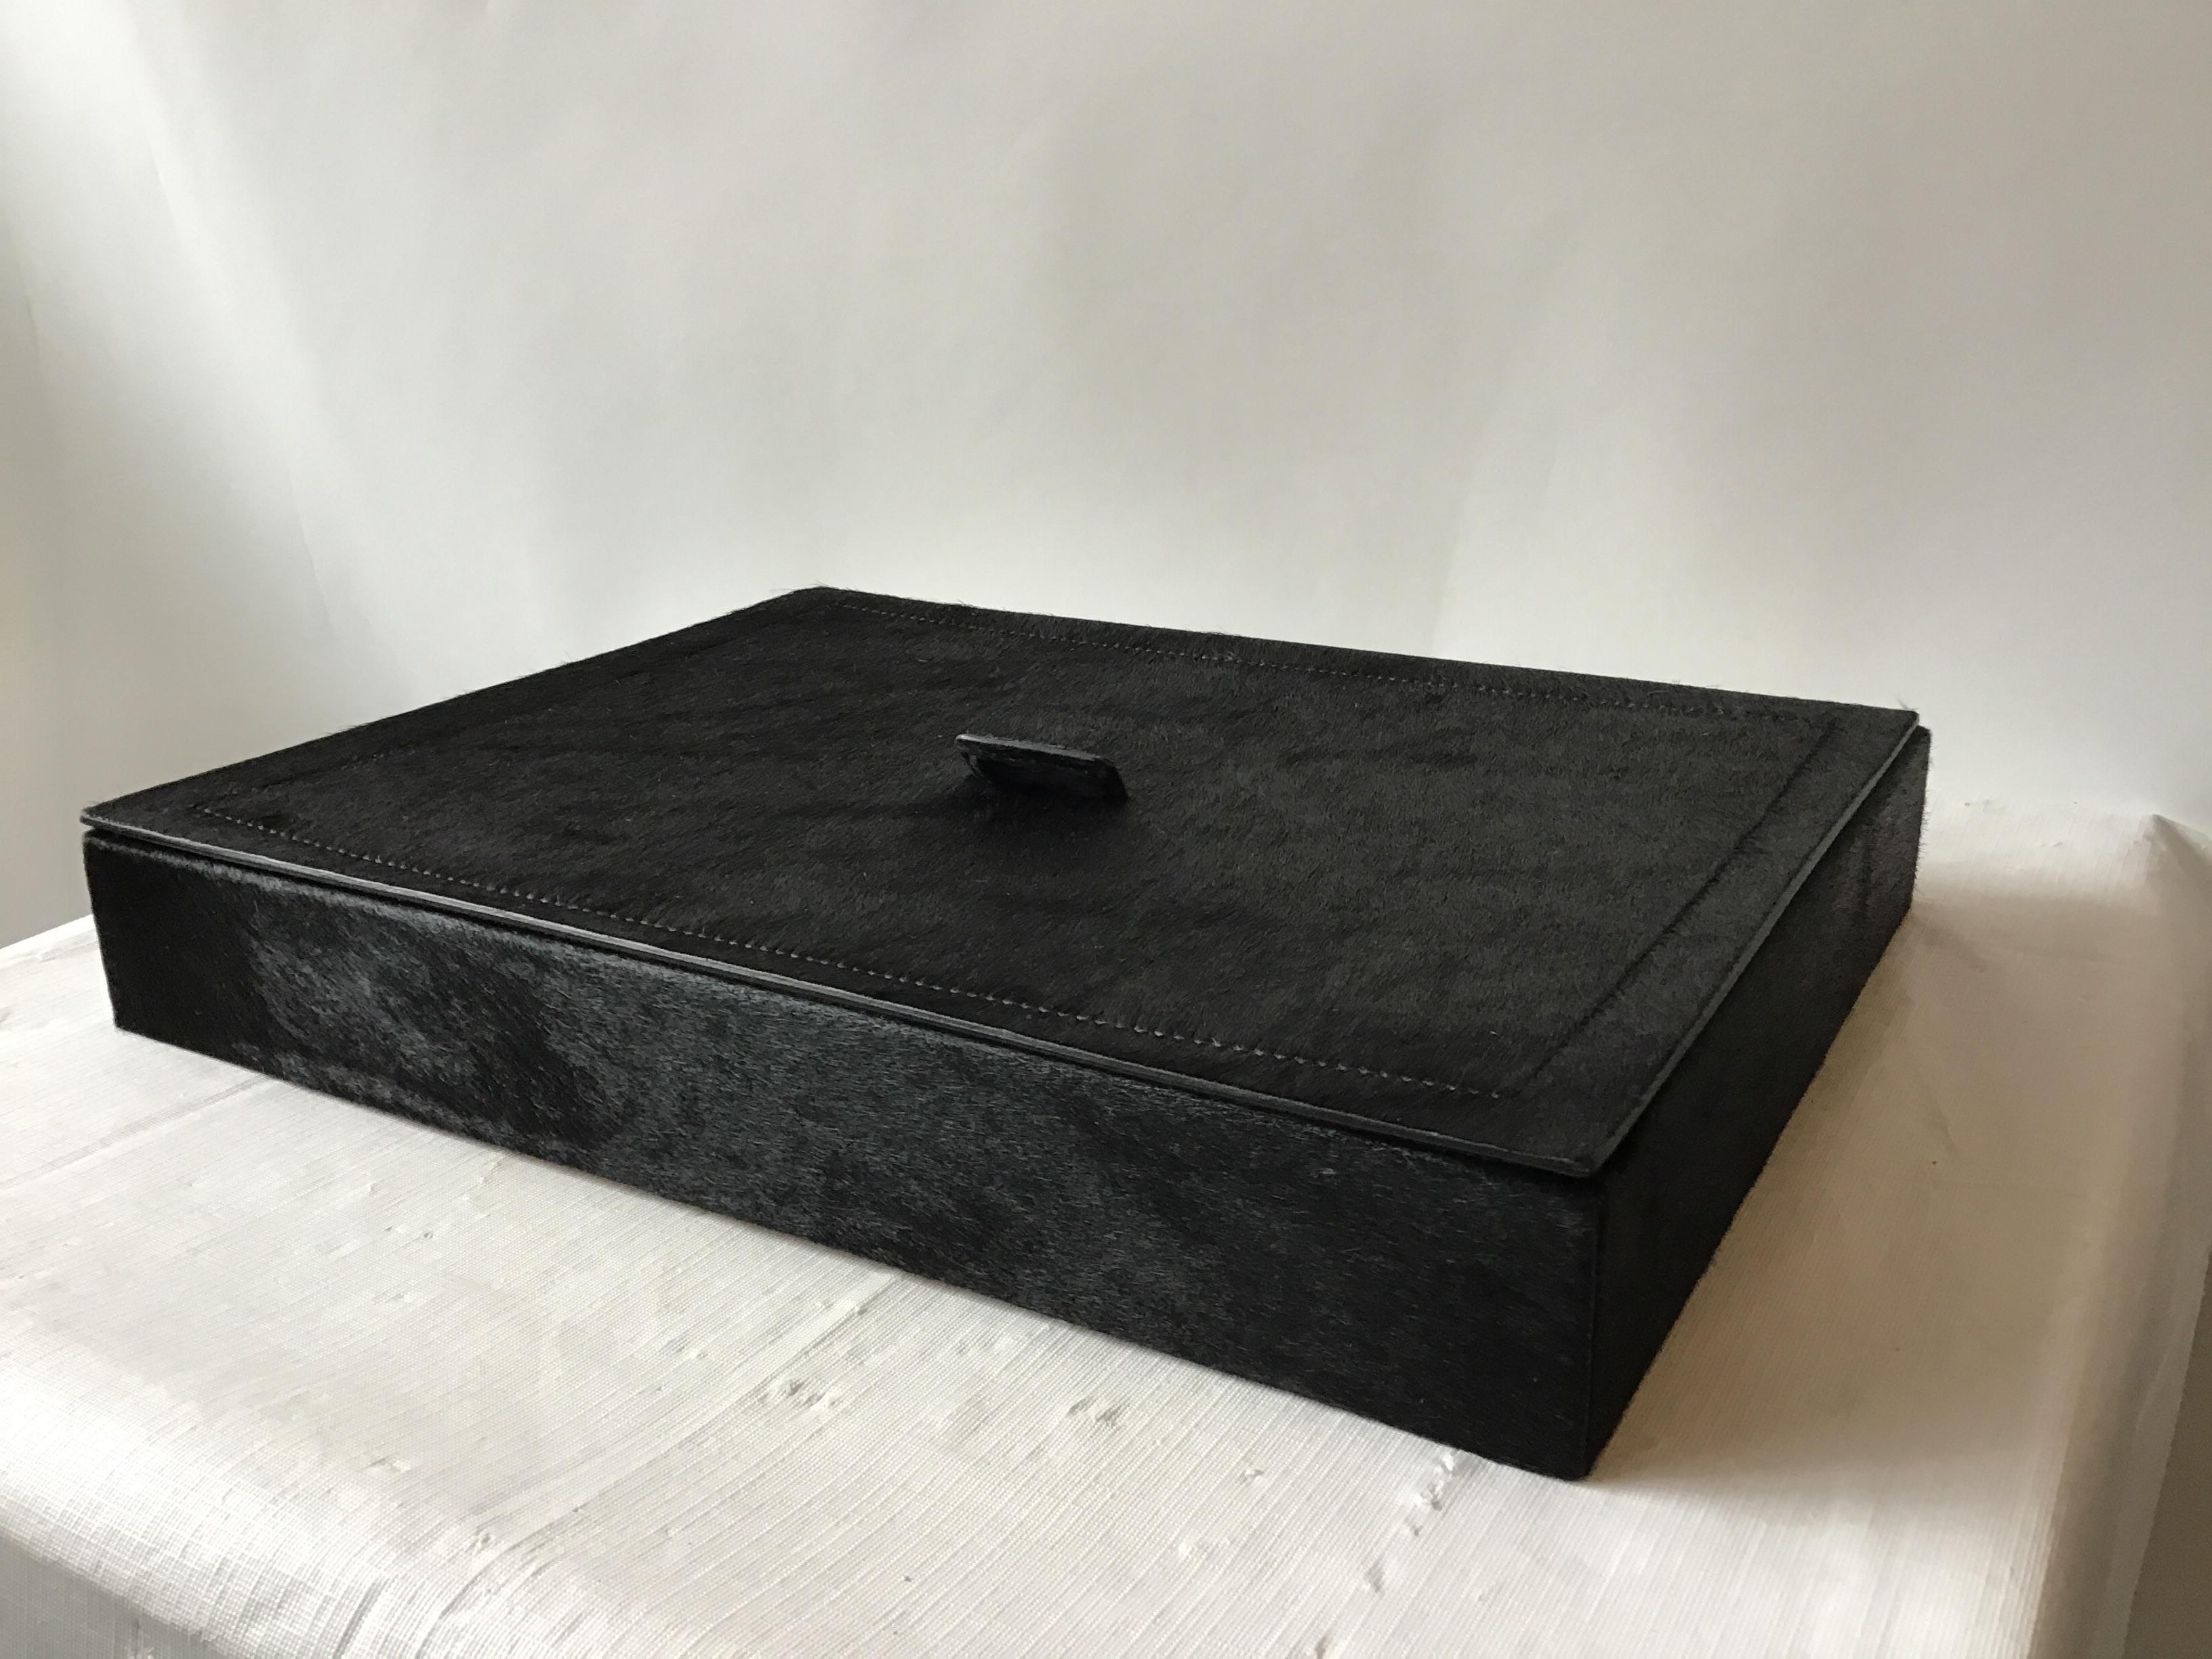 Boîte en cuir noir de B. Home interiors (maintenant appelé Giobagnara), fabriquée en Italie. Le prix d'origine était de 1250,00. D'une propriété d'East Hamptons.